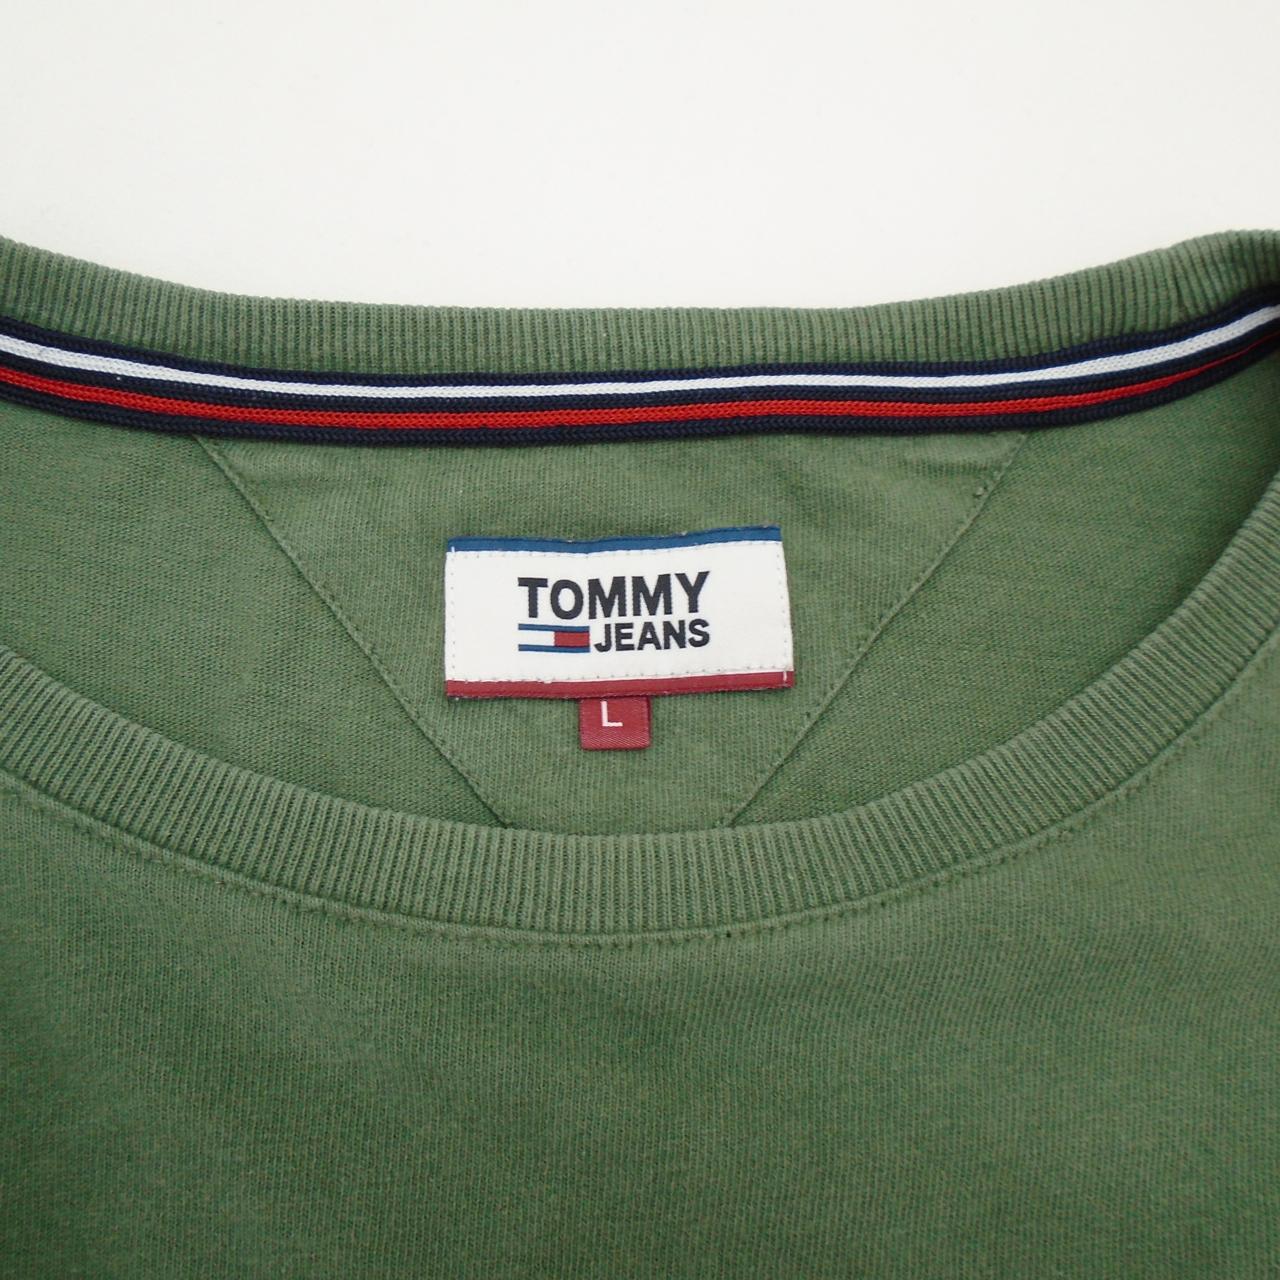 Herren-T-Shirt Tommy Hilfiger. Khaki. L. Gebraucht. Gut